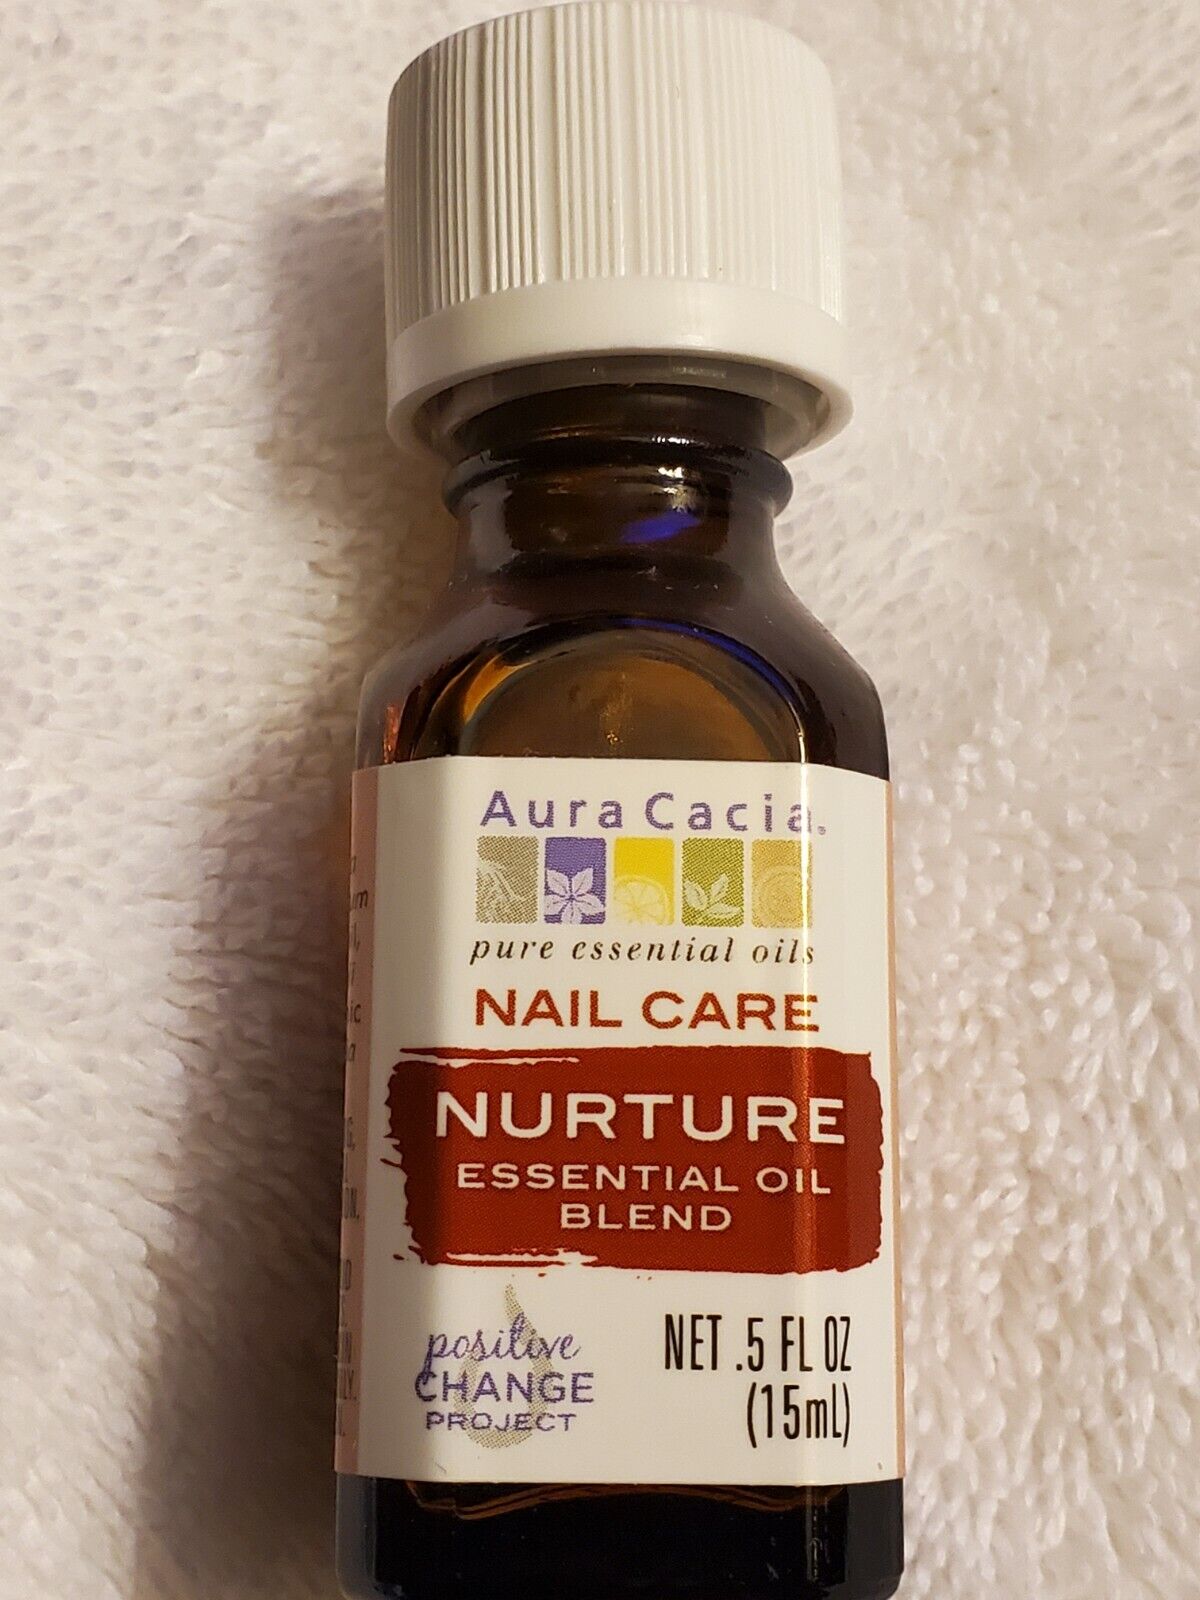 Aura Cacia Nurture Essential Oil Blend 0.5 fl. oz. (15 mL) Nail Care